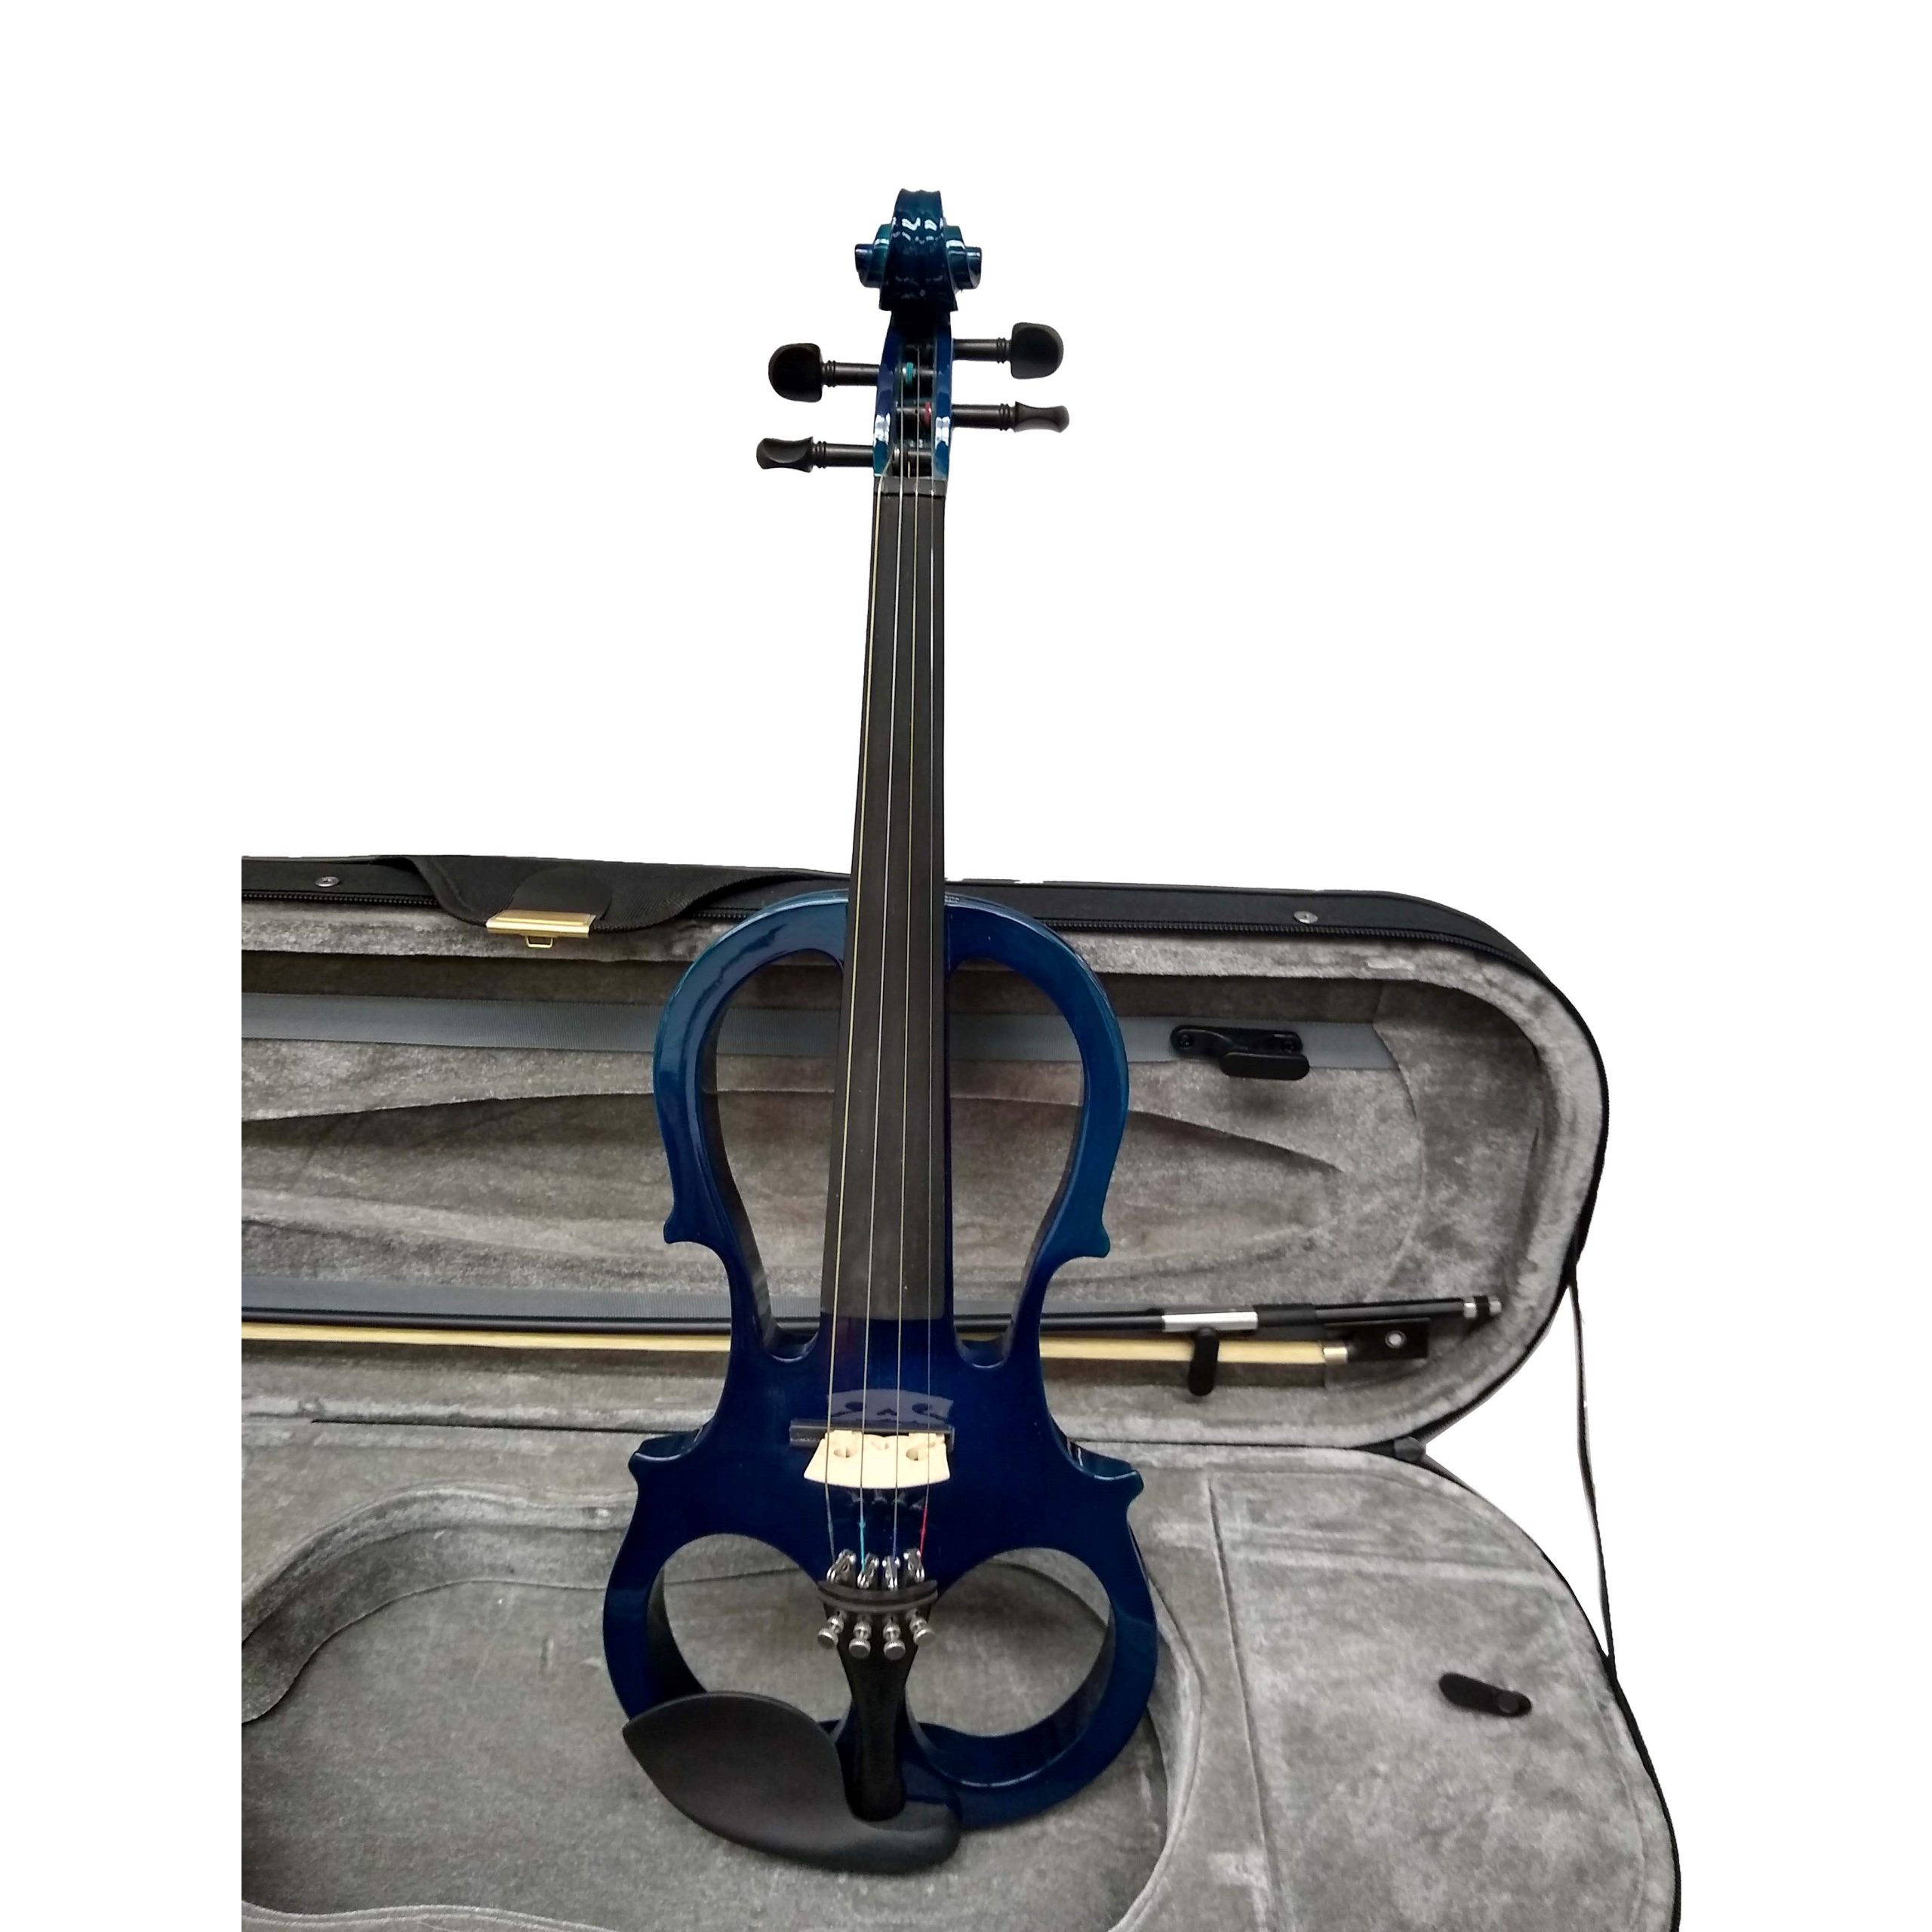   Vienna Strings Electra Violin Shaped Eldorado - Blue